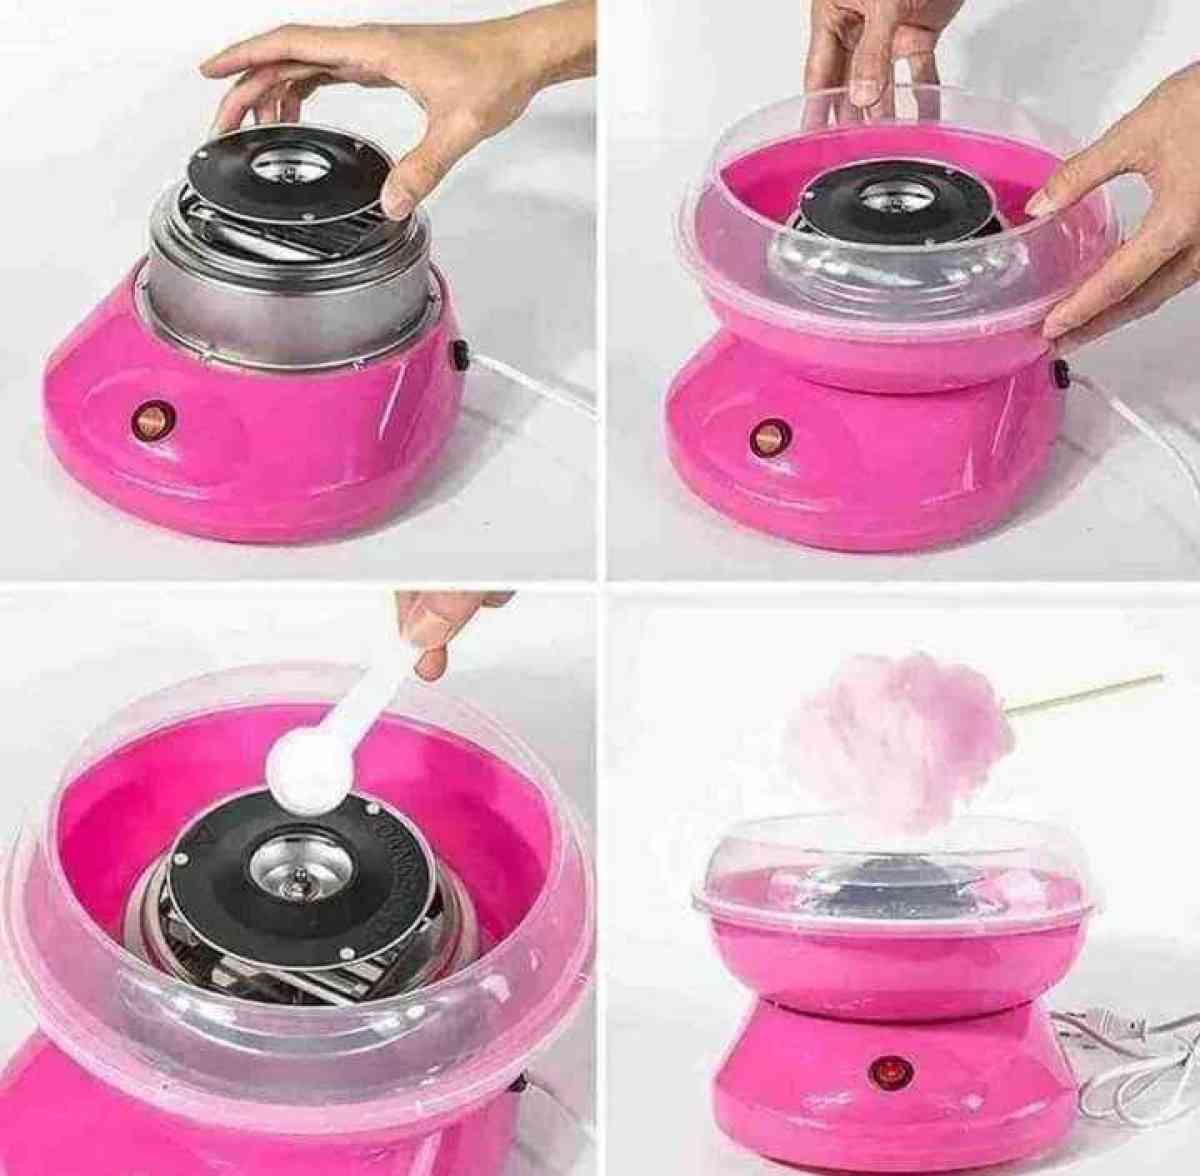 ماكينة غزل البنات cotton candy maker